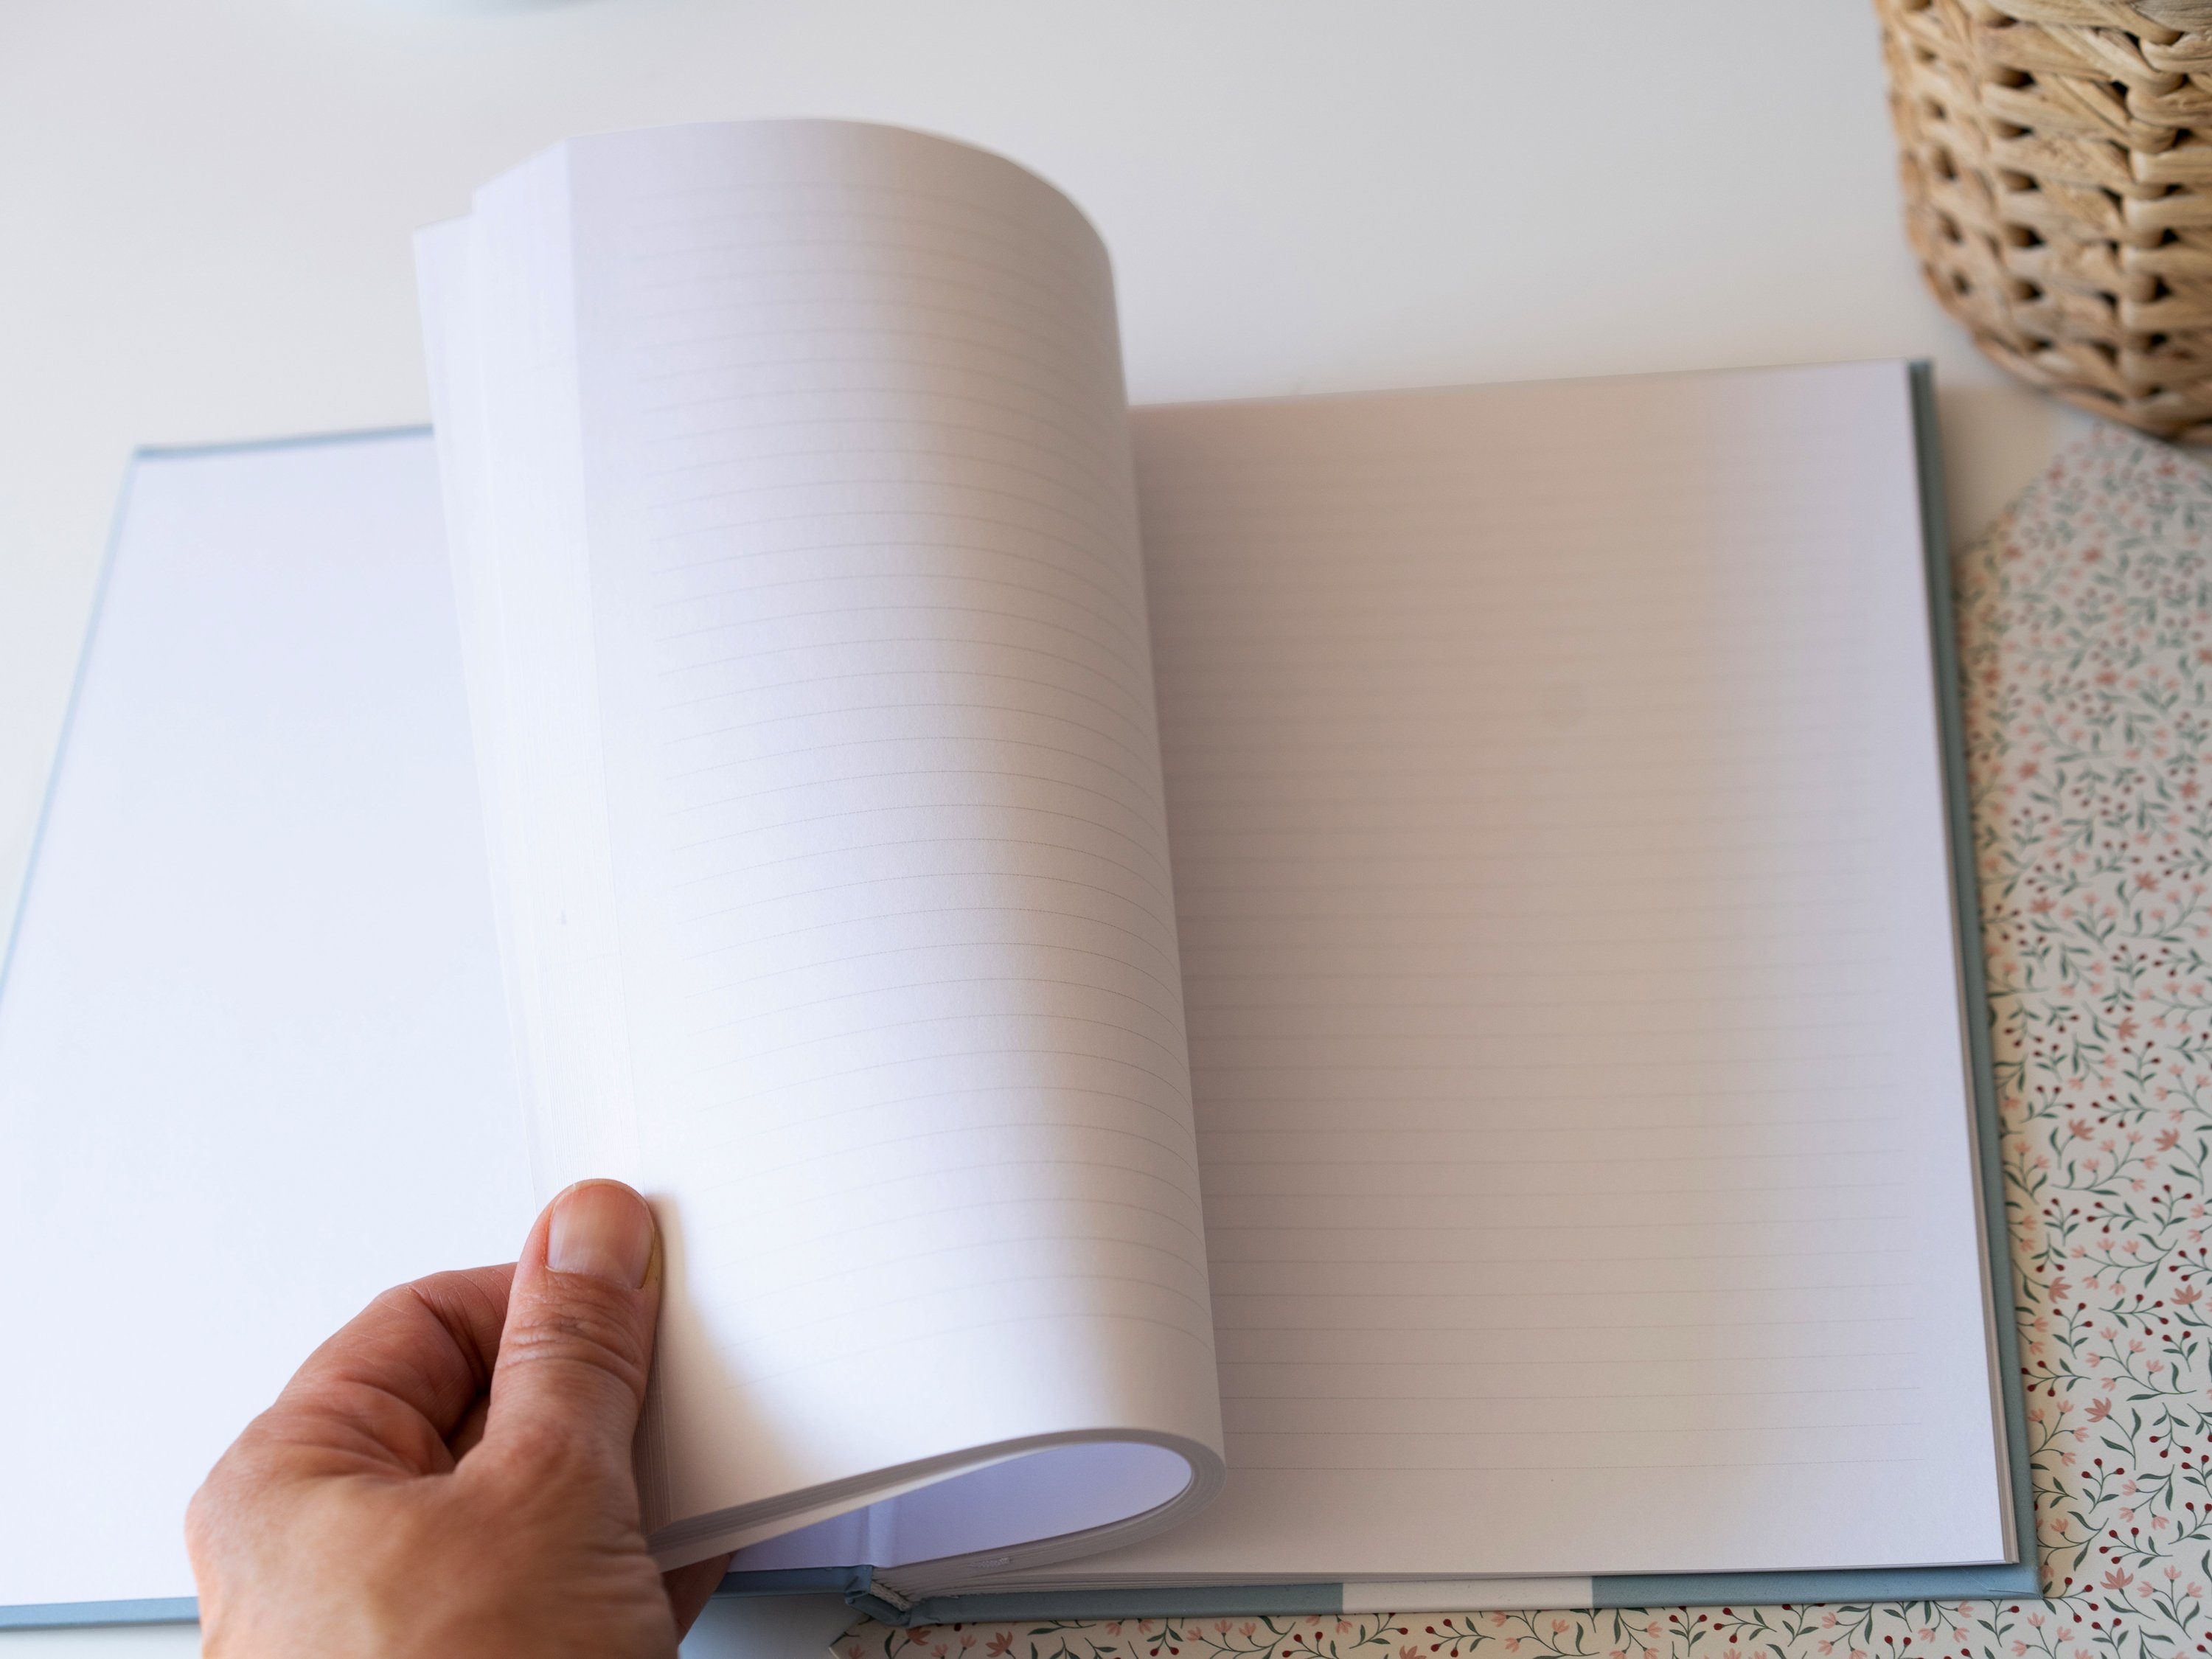 Hardcover 80 Tagebuch mit Tagebuch Liebes Notizbuch g Herz Linien, Guten blau, - 17x24 120 großes Papier, Seiten, der Eine Verlag cm rosa FSC